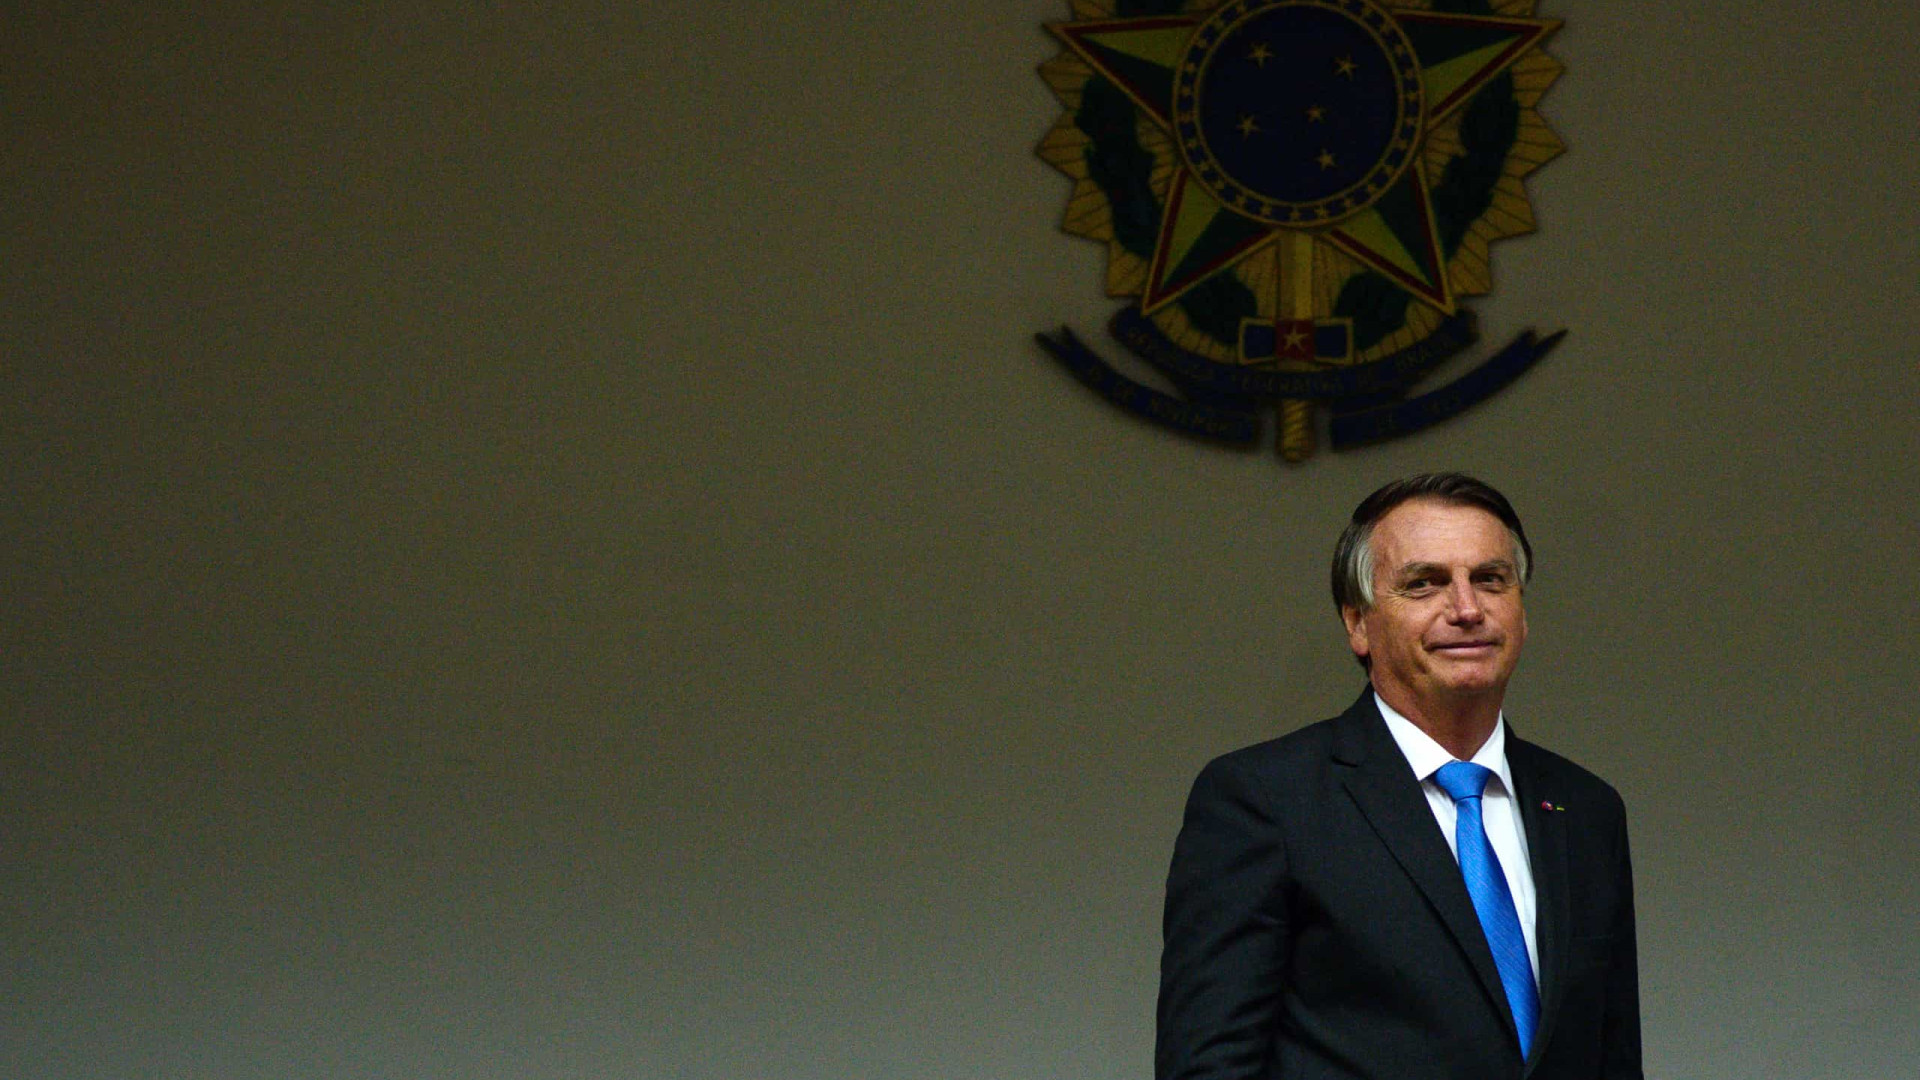 Bolsonaro: posso perder uma ou outra enquete, mas na grande maioria a gente ganha